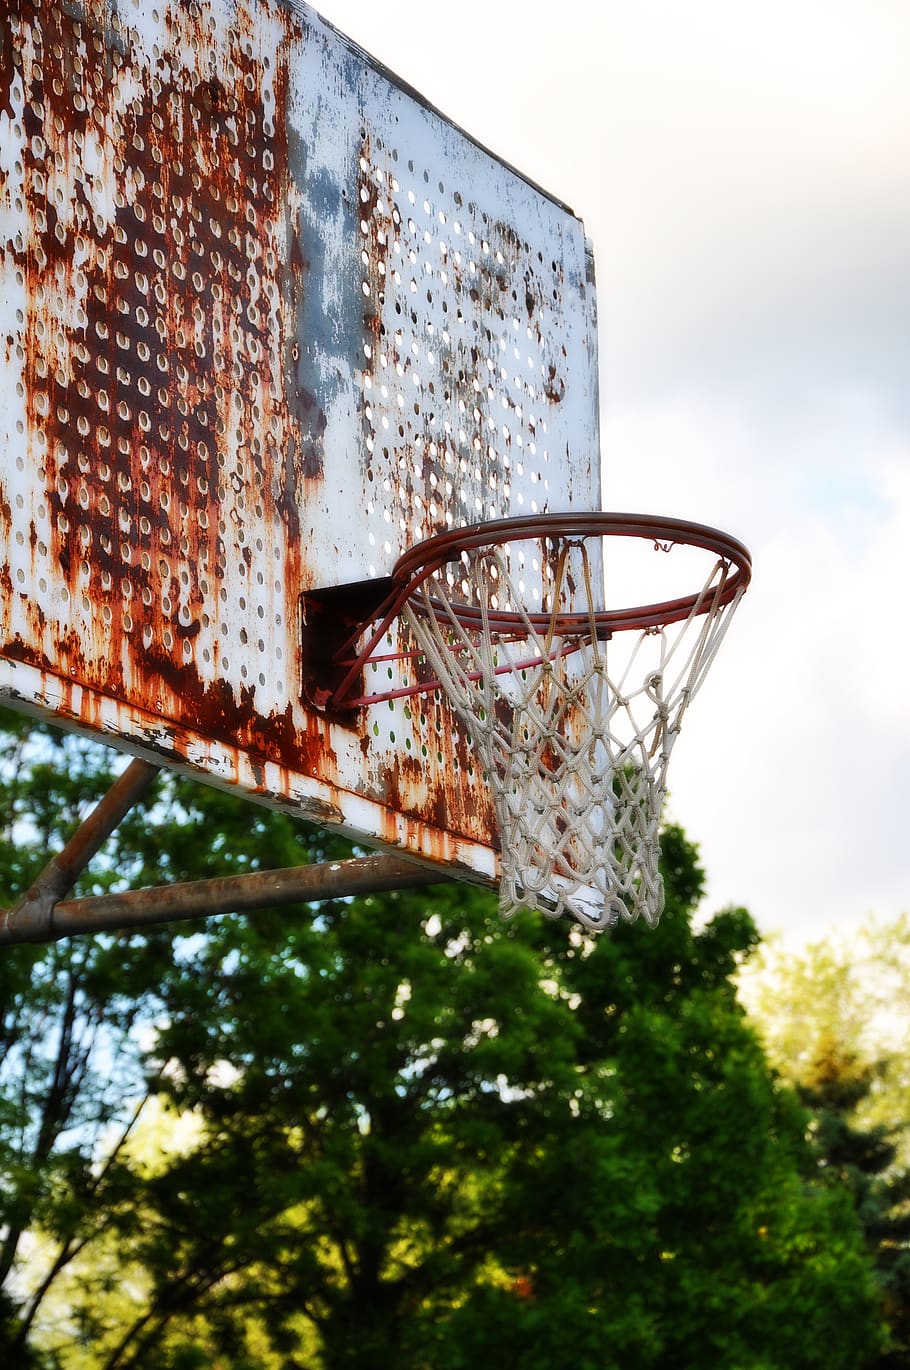 basquete, cesta, decadência urbana, rede, decadente, urbano, deteriorado, tabela, basquete - esporte, cesta de basquete